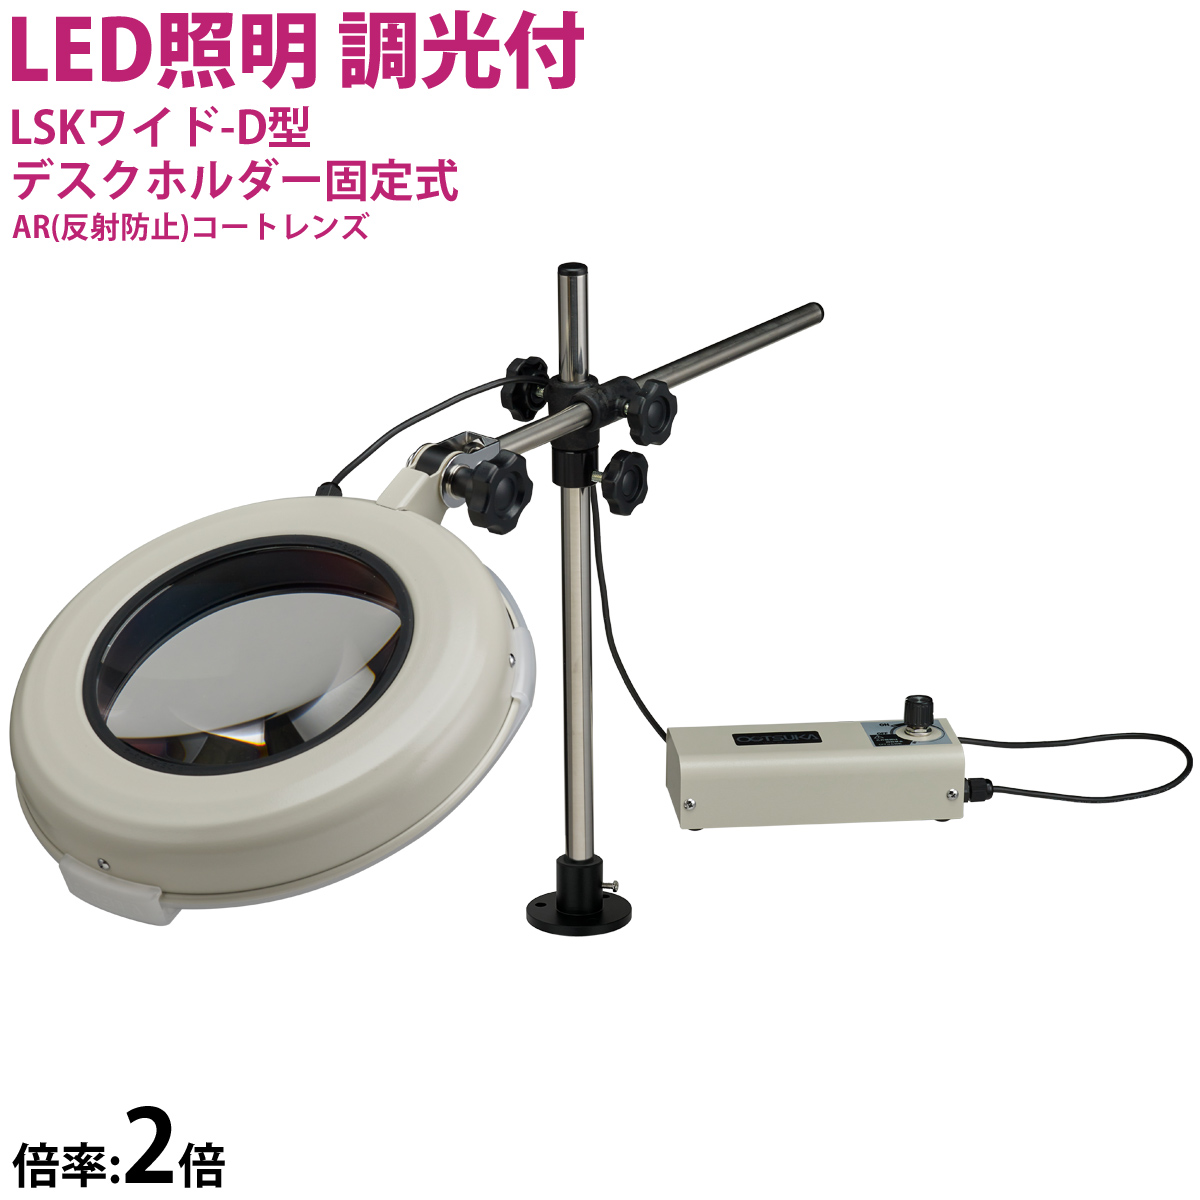 小物などお買い得な福袋 OTSUKA オーツカ光学 LED照明拡大鏡 SKKL-B型